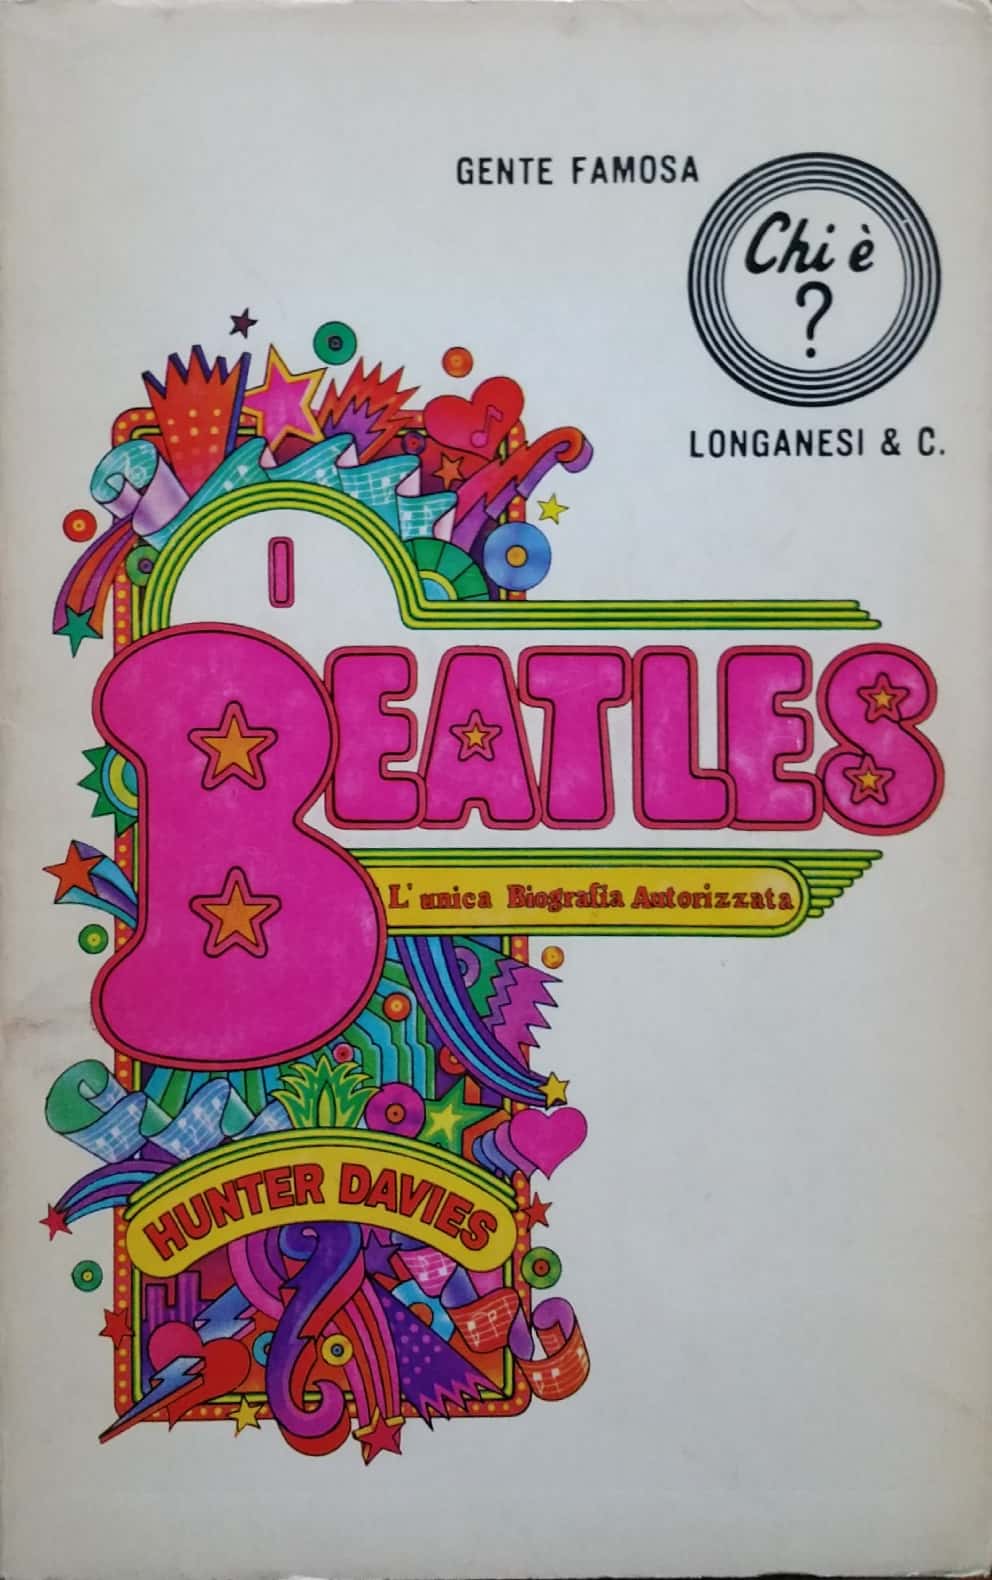 Per i collezionisti di libri sui FabFour c’è in vendita il primo libro sui Beatles uscito in Italia